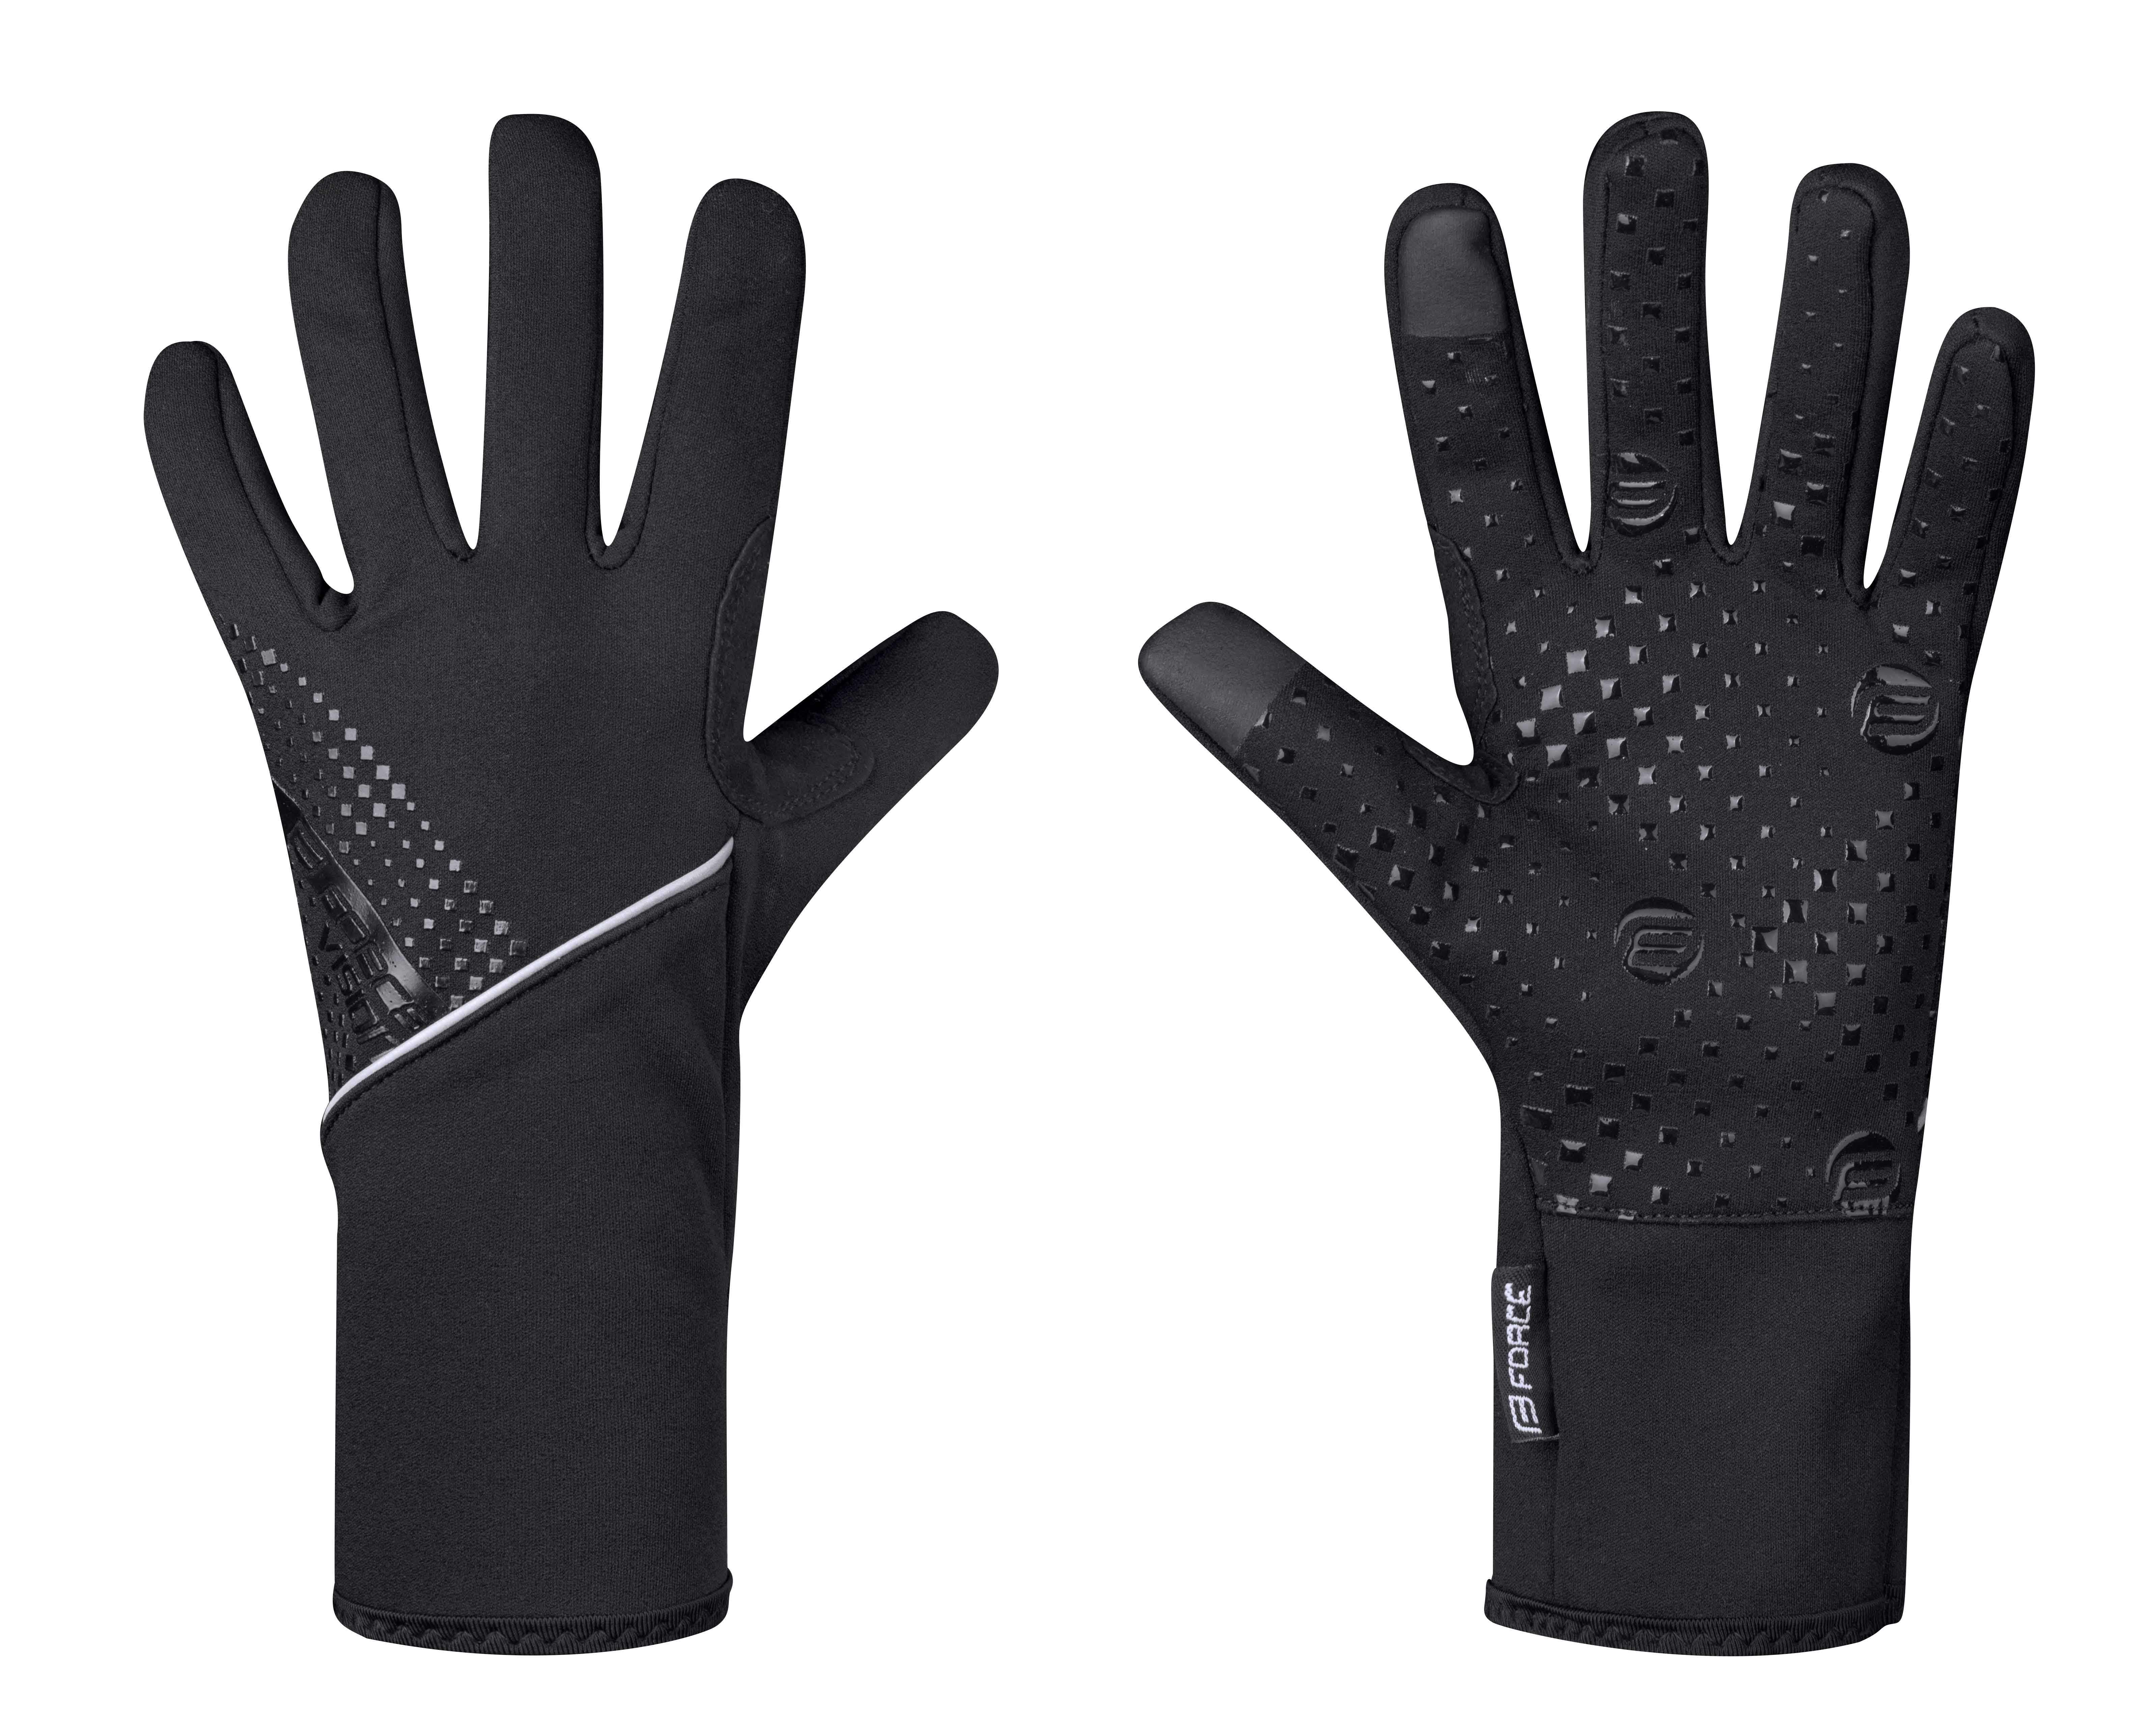 rukavice F VISION softshell, jaro-podzim, černé L